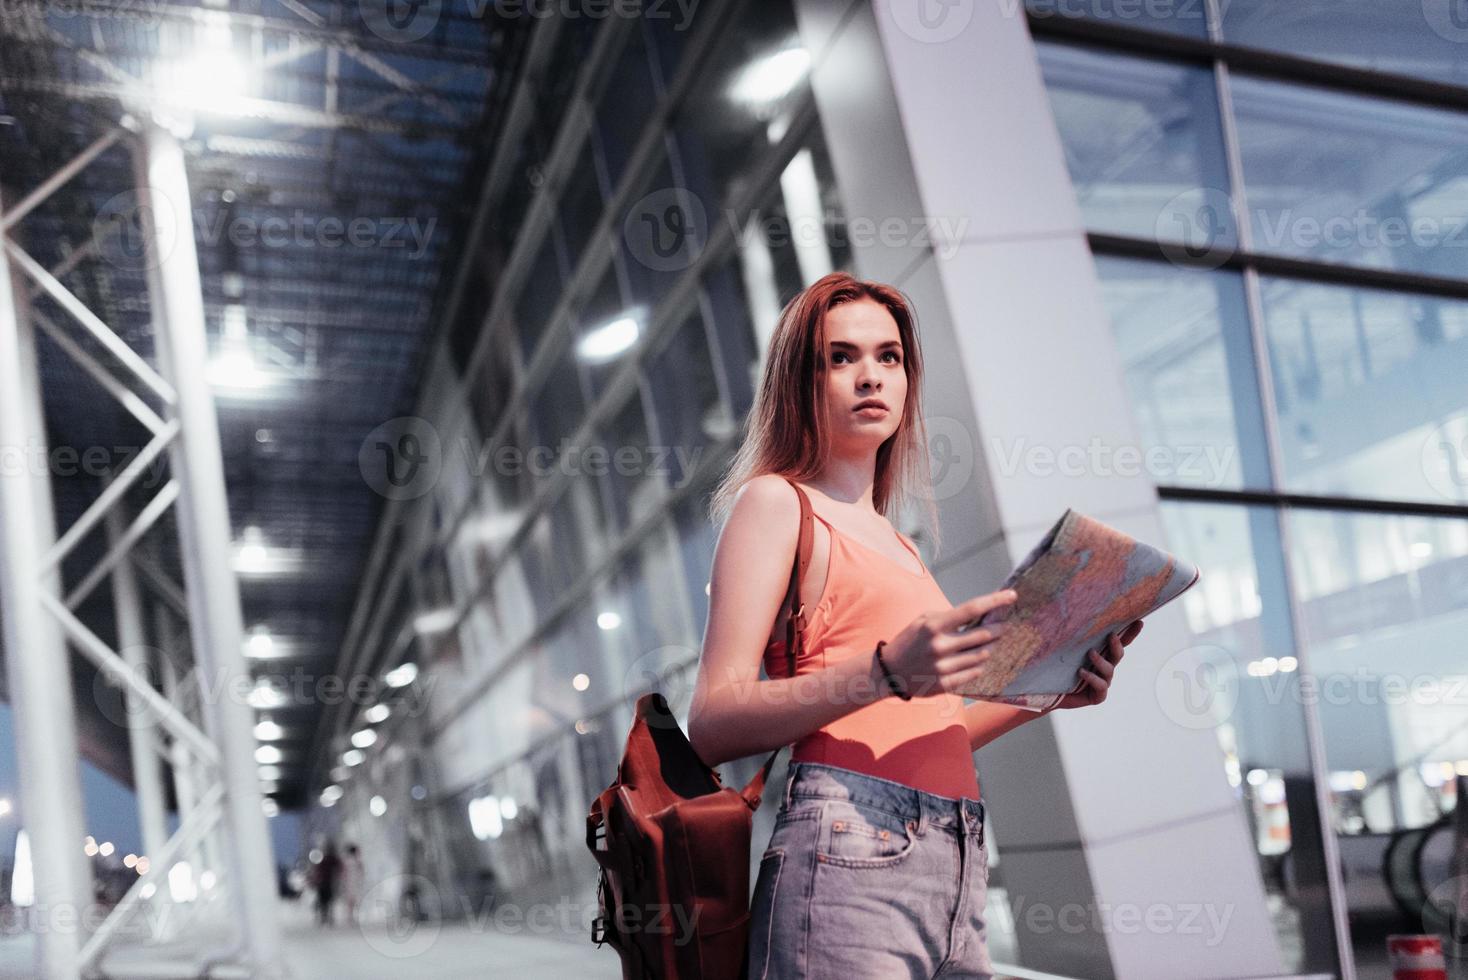 ver weg kijken. aantrekkelijk meisje dat in de buurt van de luchthaven loopt en naar de kaart in haar handen kijkt foto